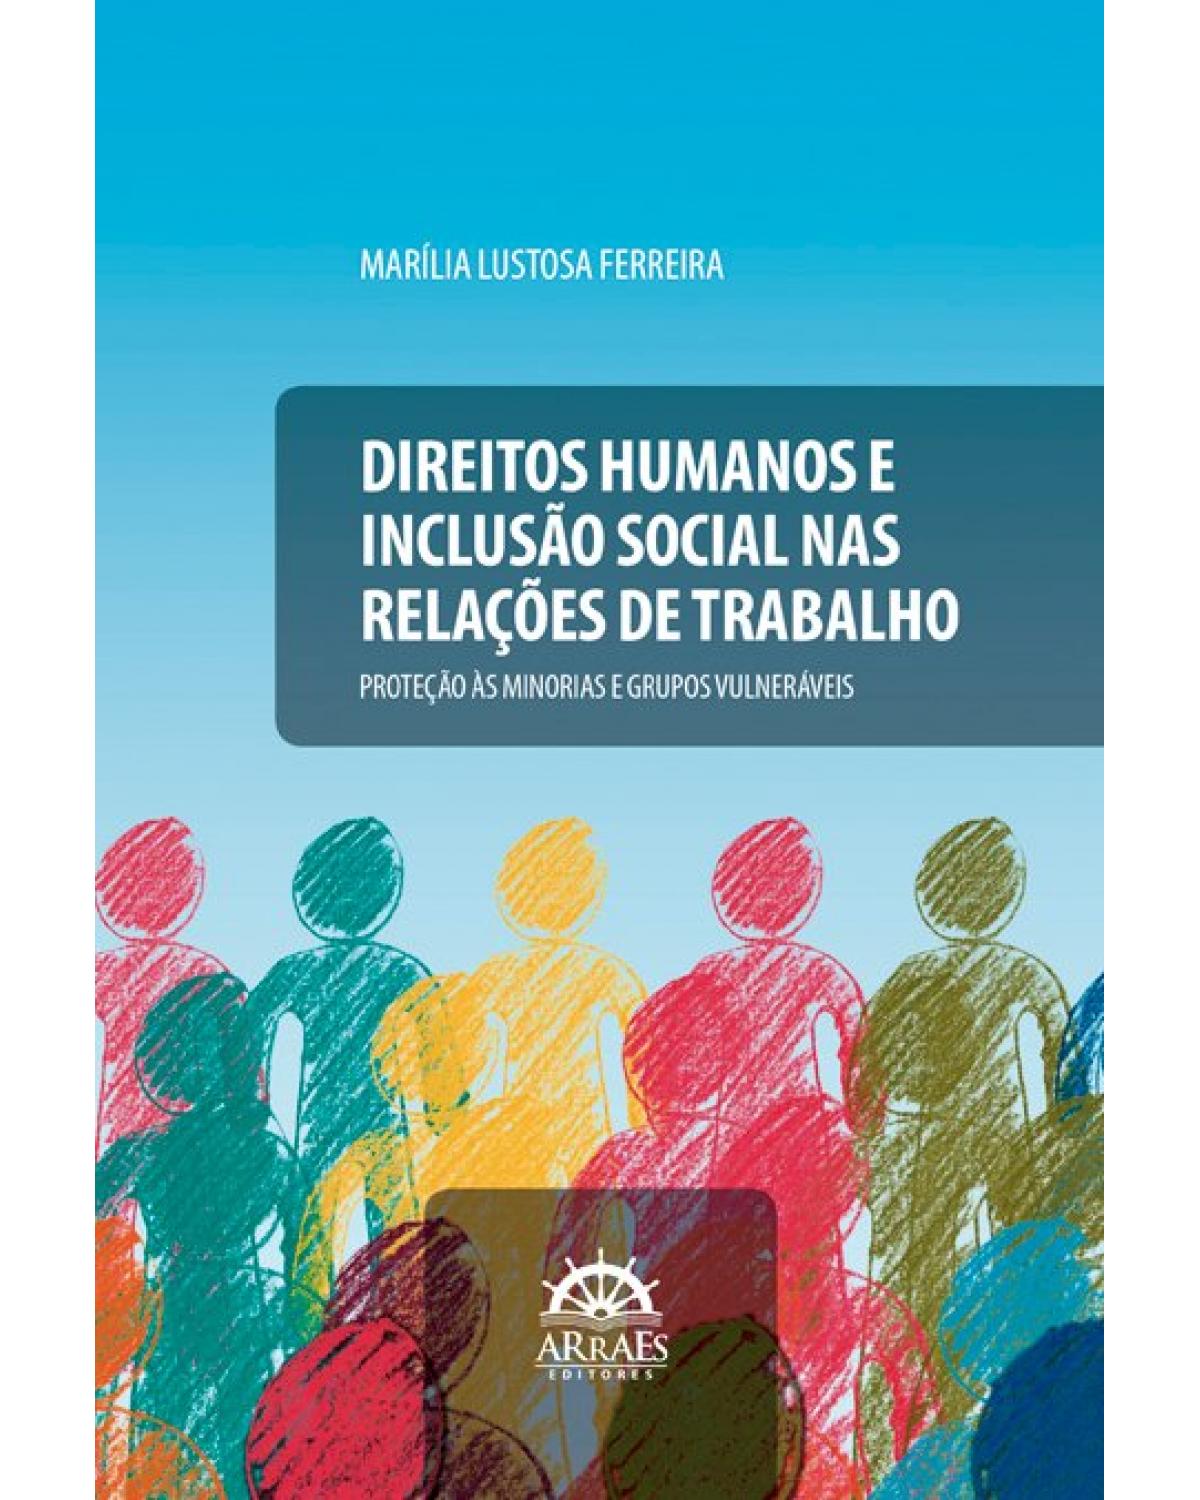 Direitos humanos e inclusão social nas relações de trabalho - proteção às minorias e grupos vulneráveis - 1ª Edição | 2021